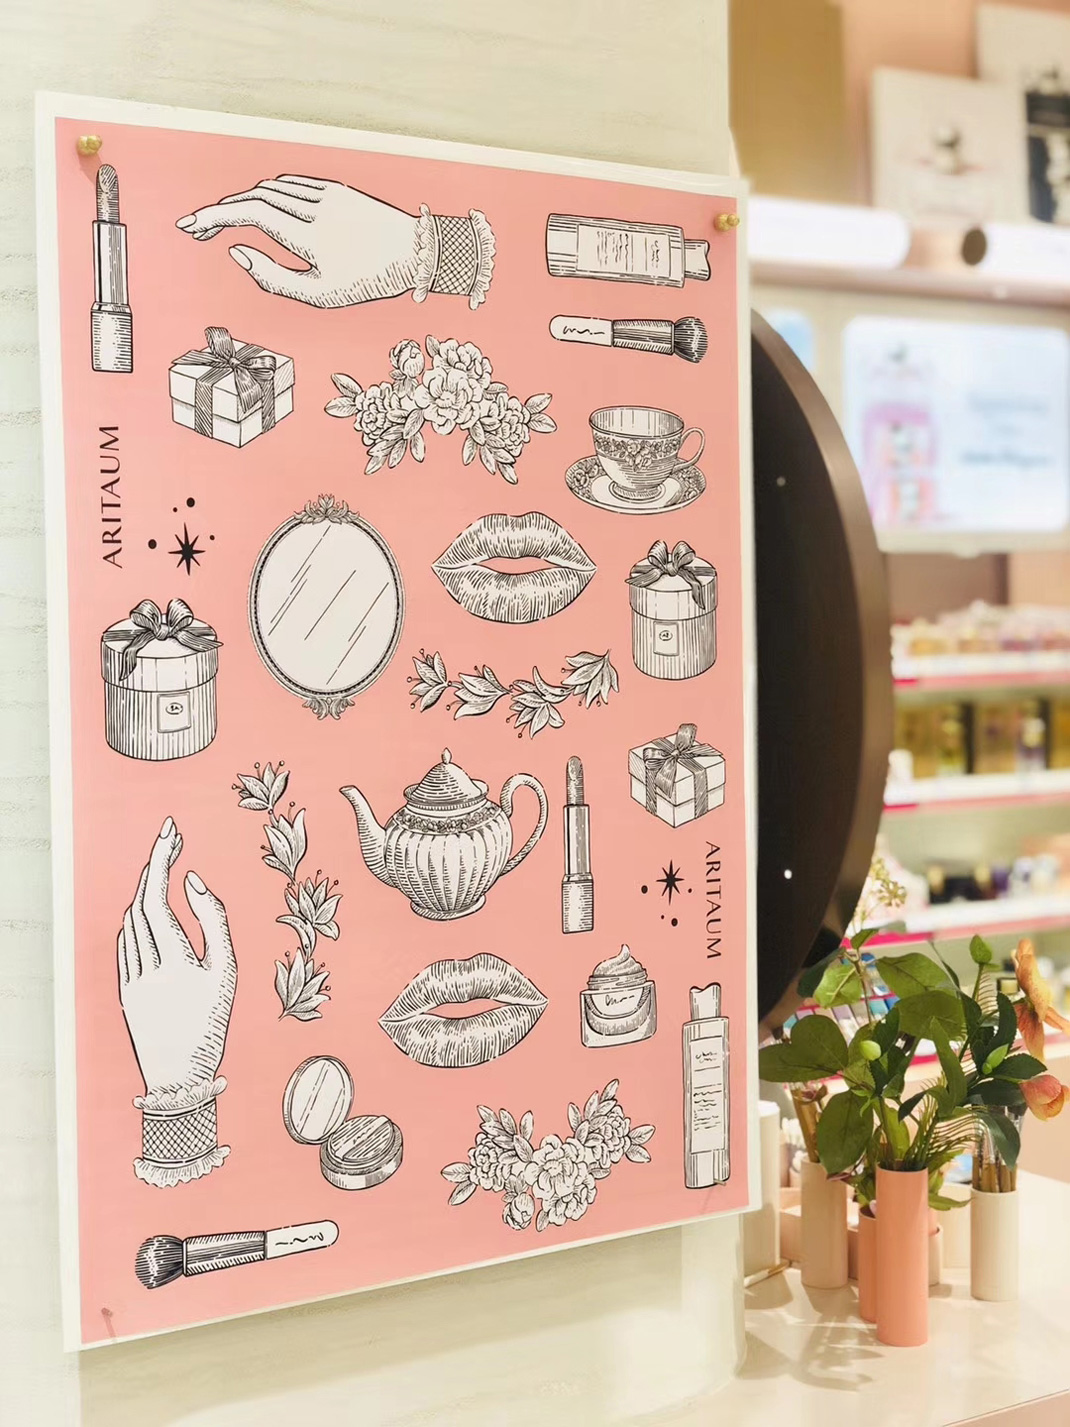 Aritaum第一家多品店 上海 咖啡馆 插画 插图 包装设计 粉色 logo设计 vi设计 空间设计